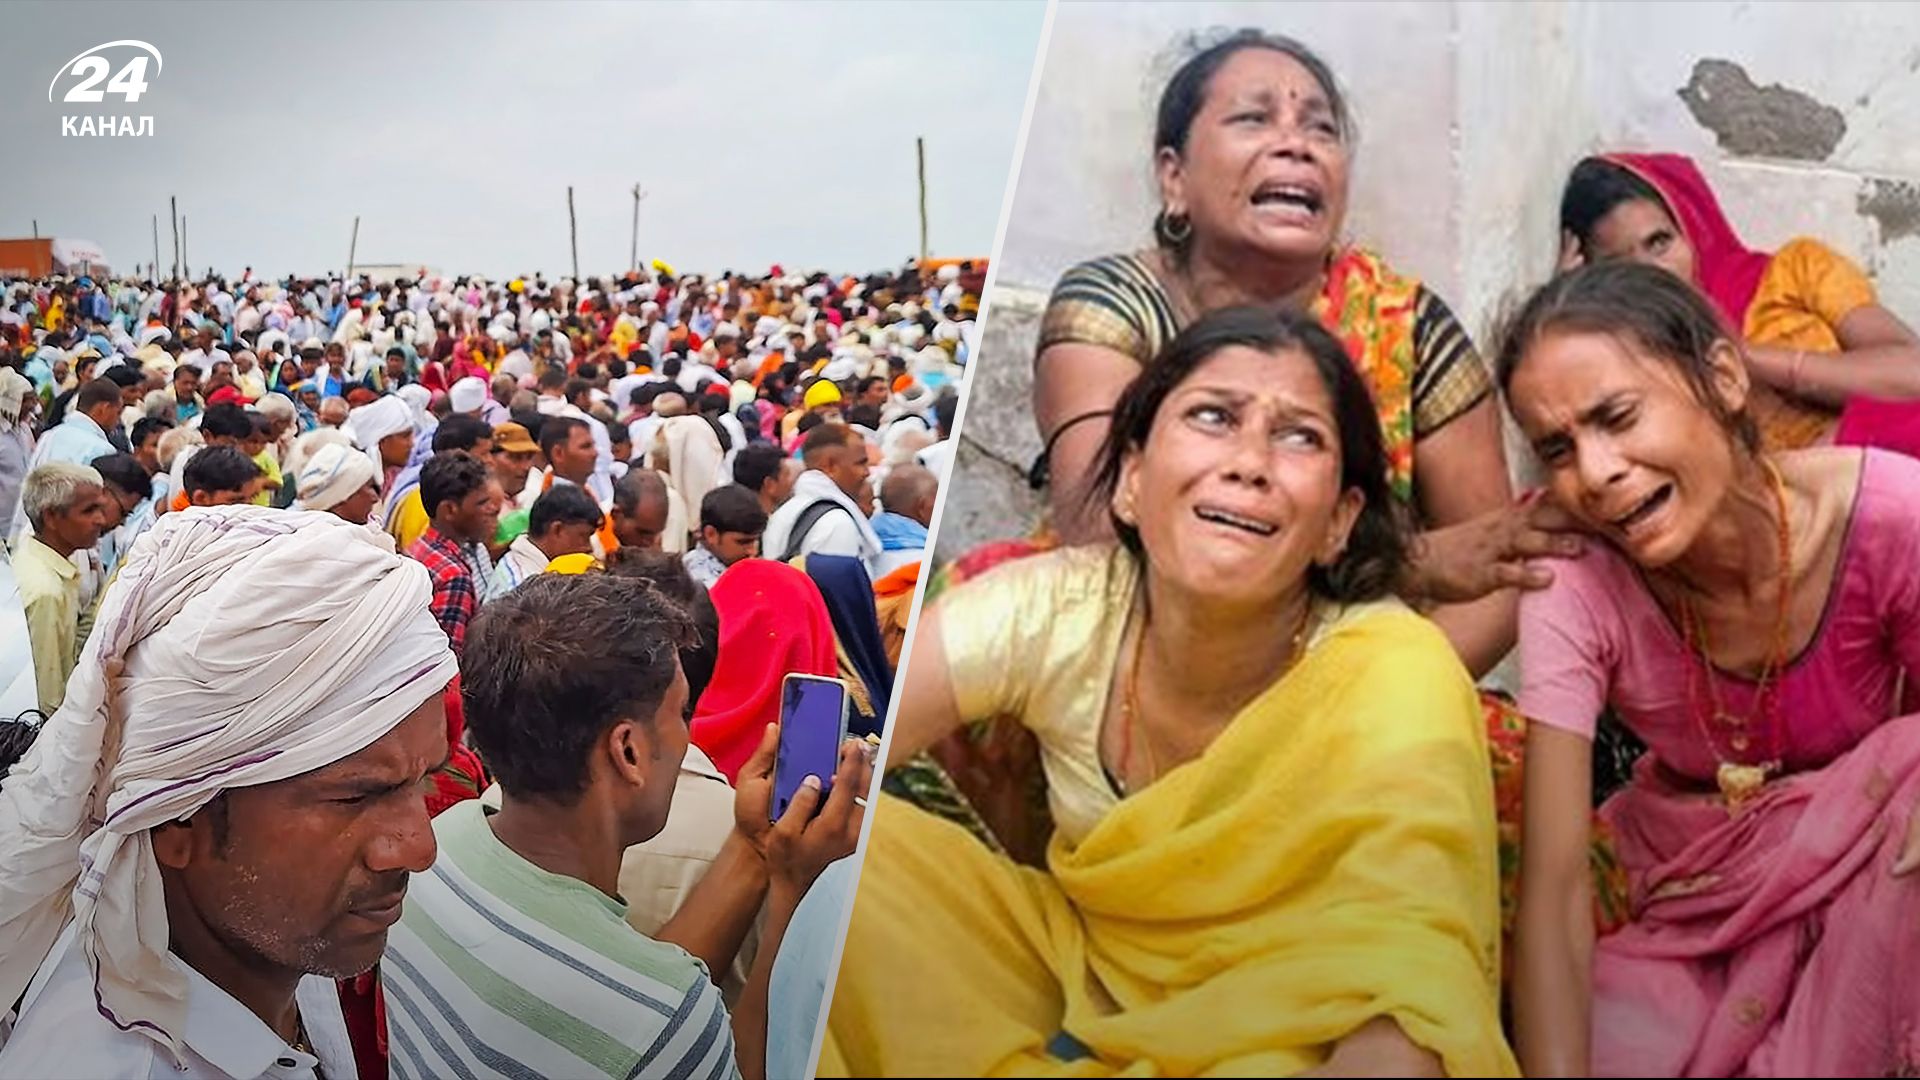 В Индии погибло более 100 человек в давке во время религиозной процессии